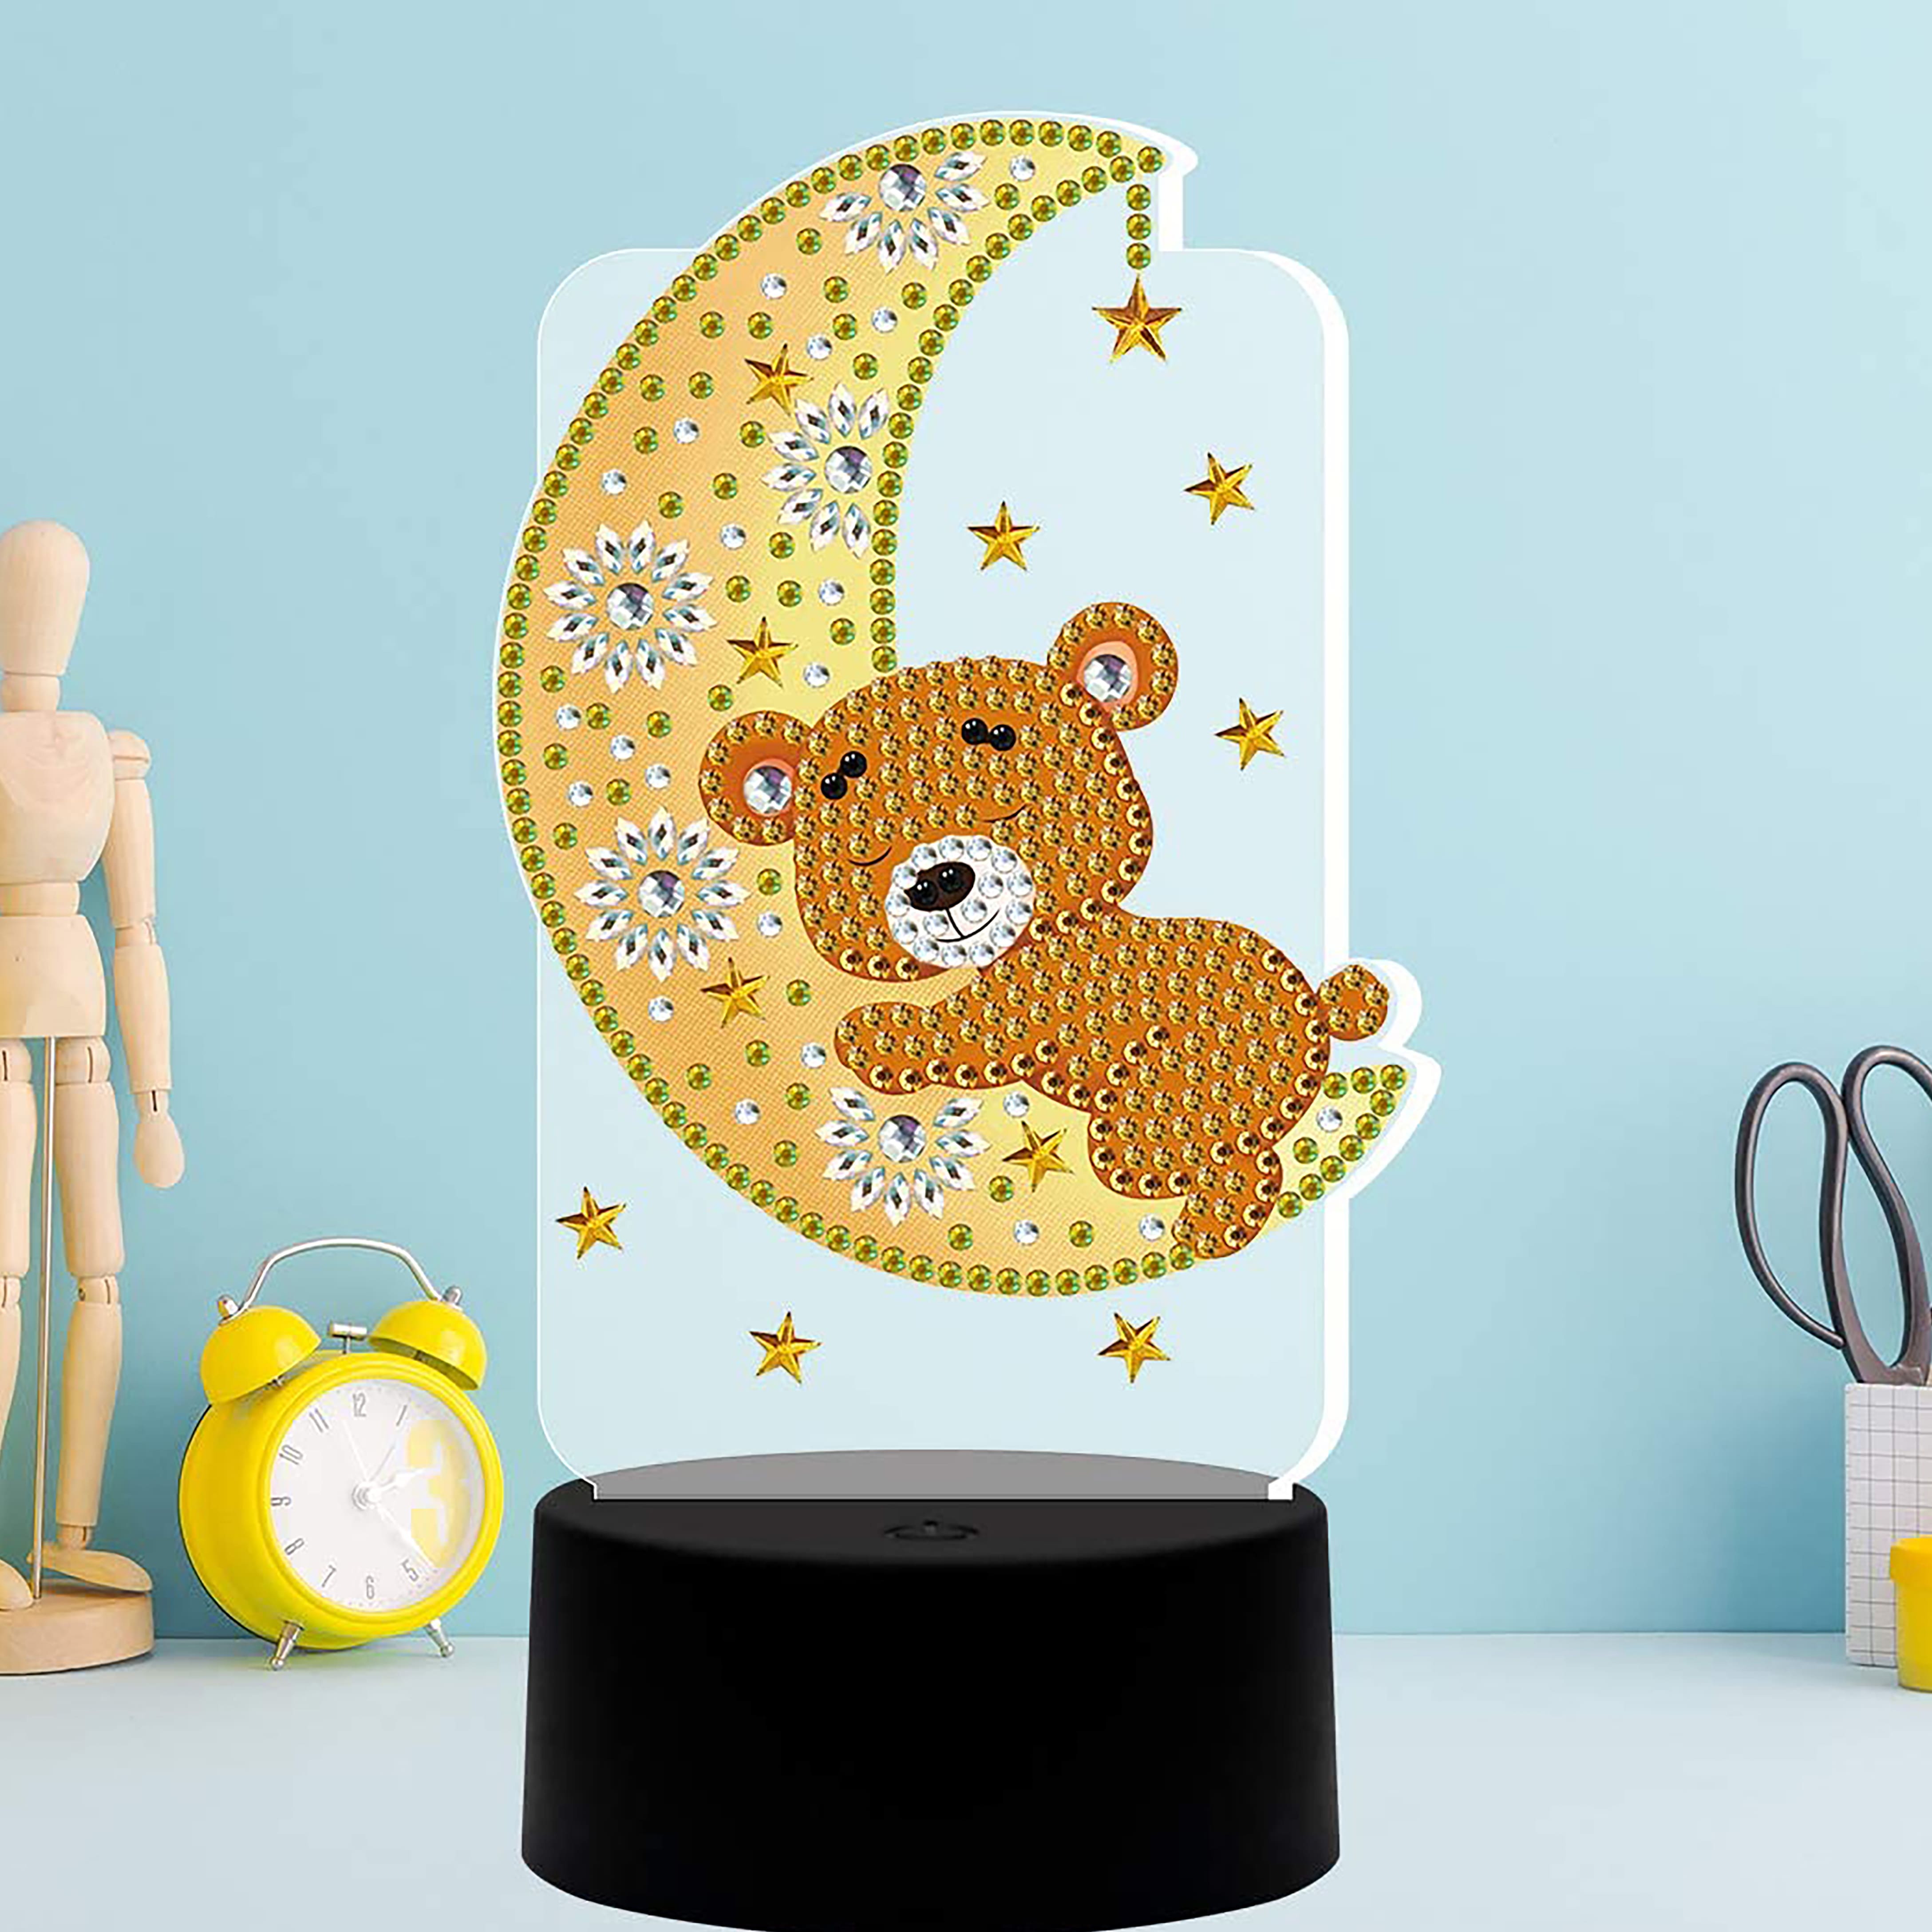 Sparkly Selections Teddy Bear Lamp Diamond Art Kit